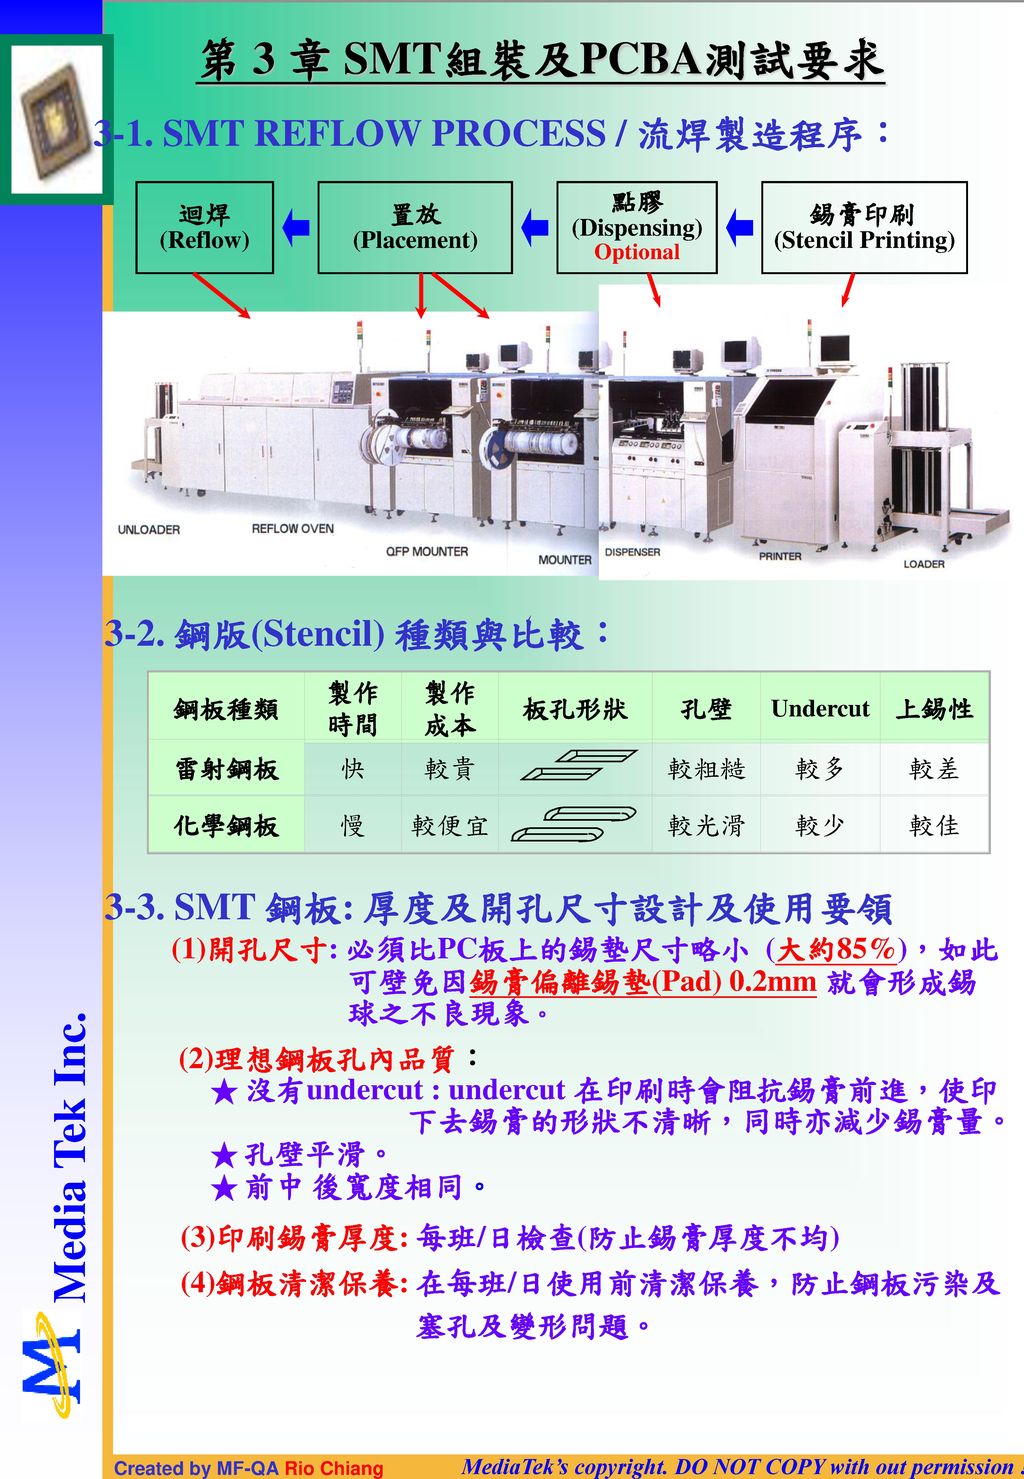 第 3 章 SMT組裝及PCBA測試要求 3-1. SMT REFLOW PROCESS / 流焊製造程序：